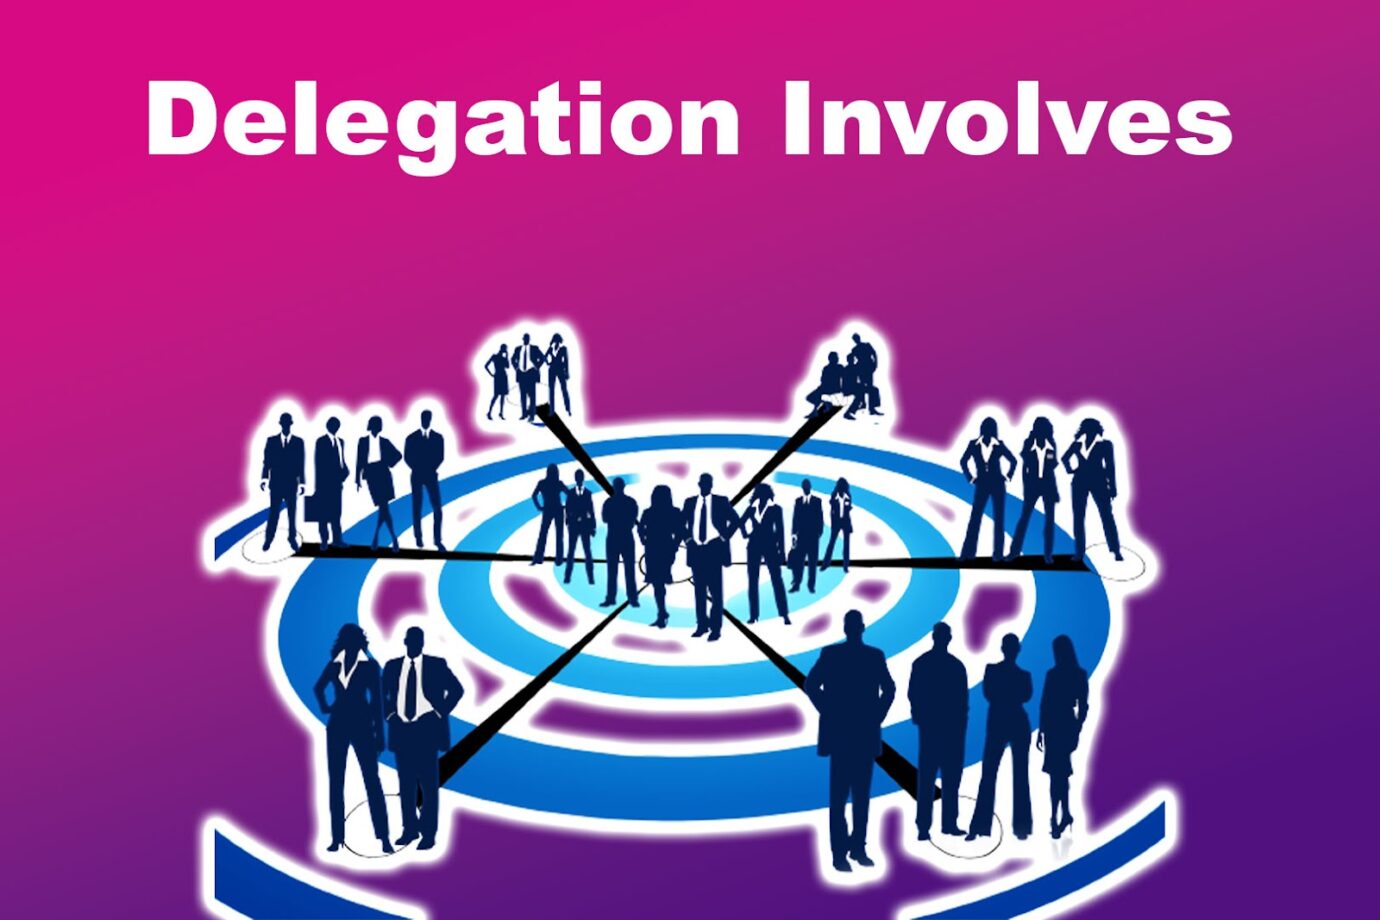  Delegation Involves